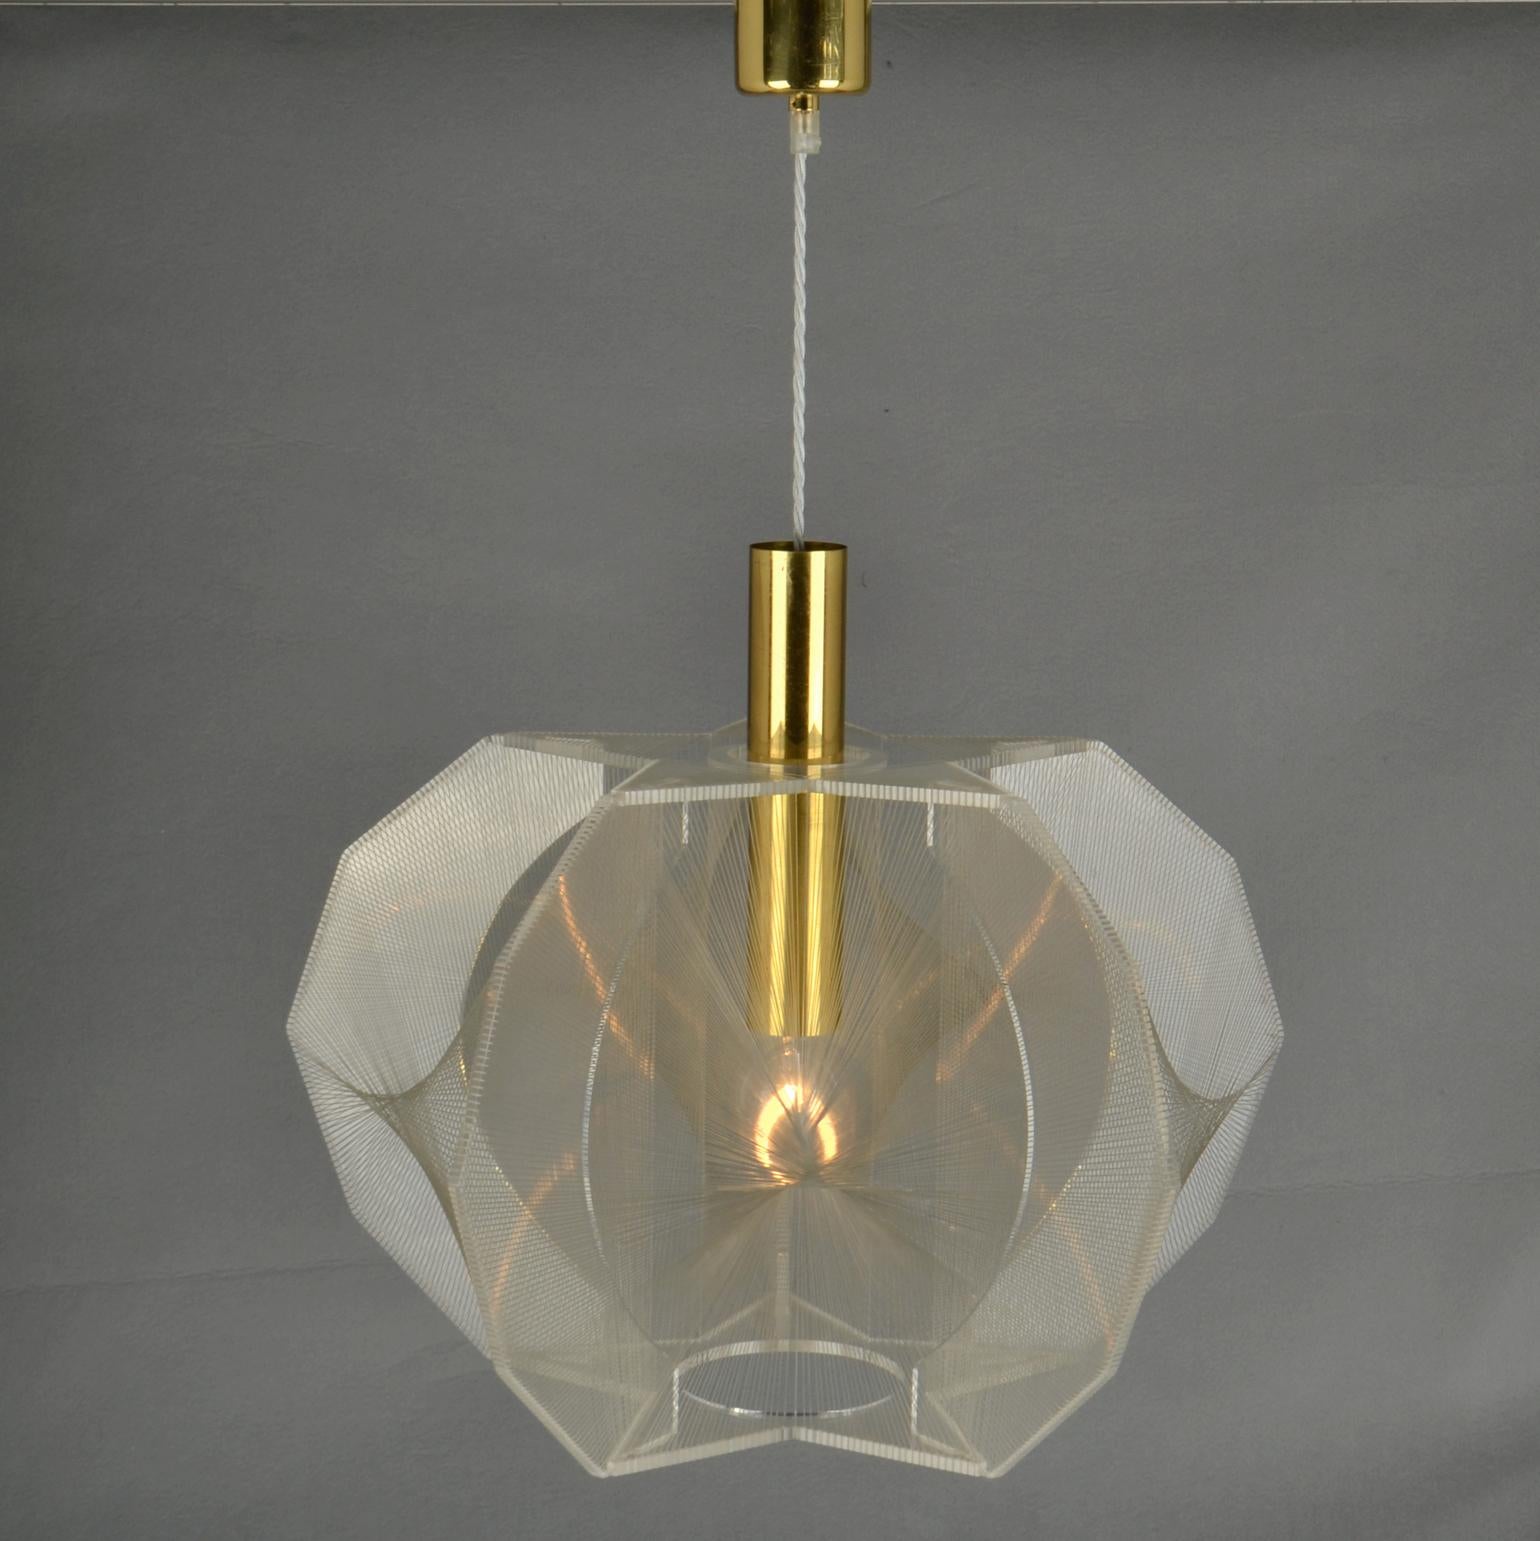 Skulpturale Lampe in Sternform aus klarem Acryl / Plexiglas und klarem, transparentem Draht, begleitet von einer Messinghalterung für die Innenausstattung. Das Design ist von dem Pionier, Avantgarde-Künstler und Bildhauer Naum Gabo (1890-1977)